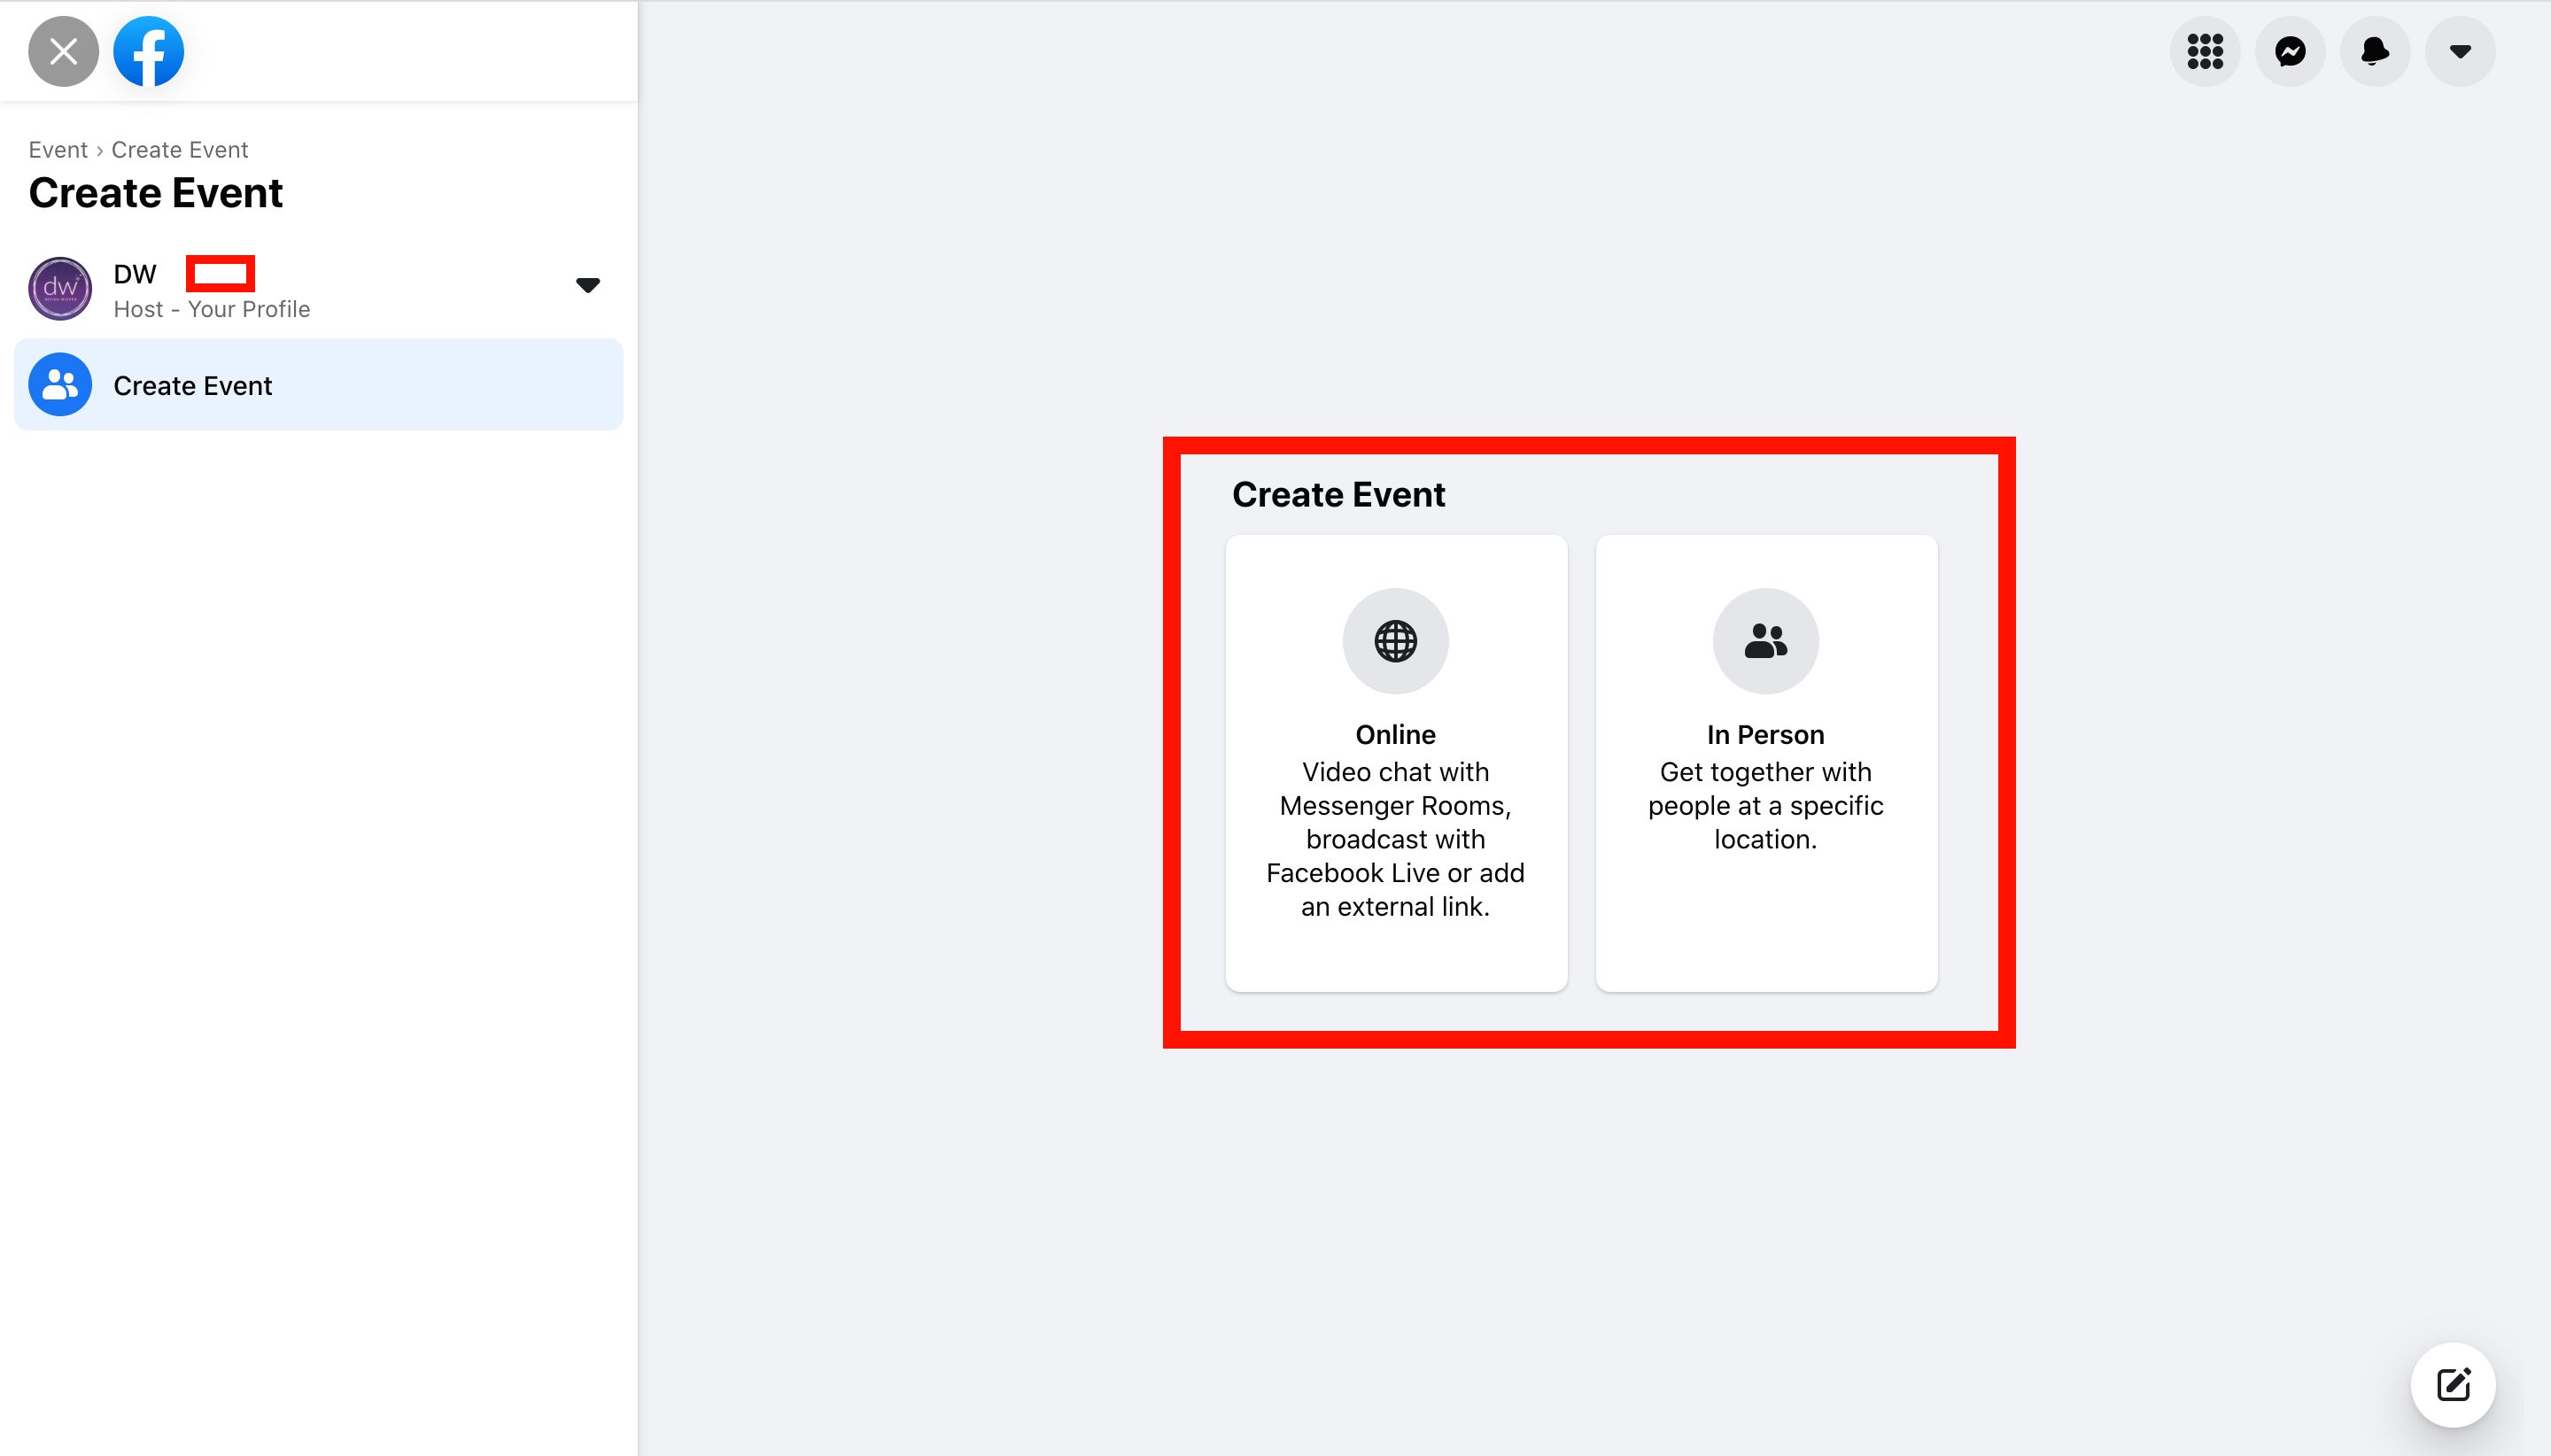 Captura de pantalla de las opciones de eventos en línea y en persona